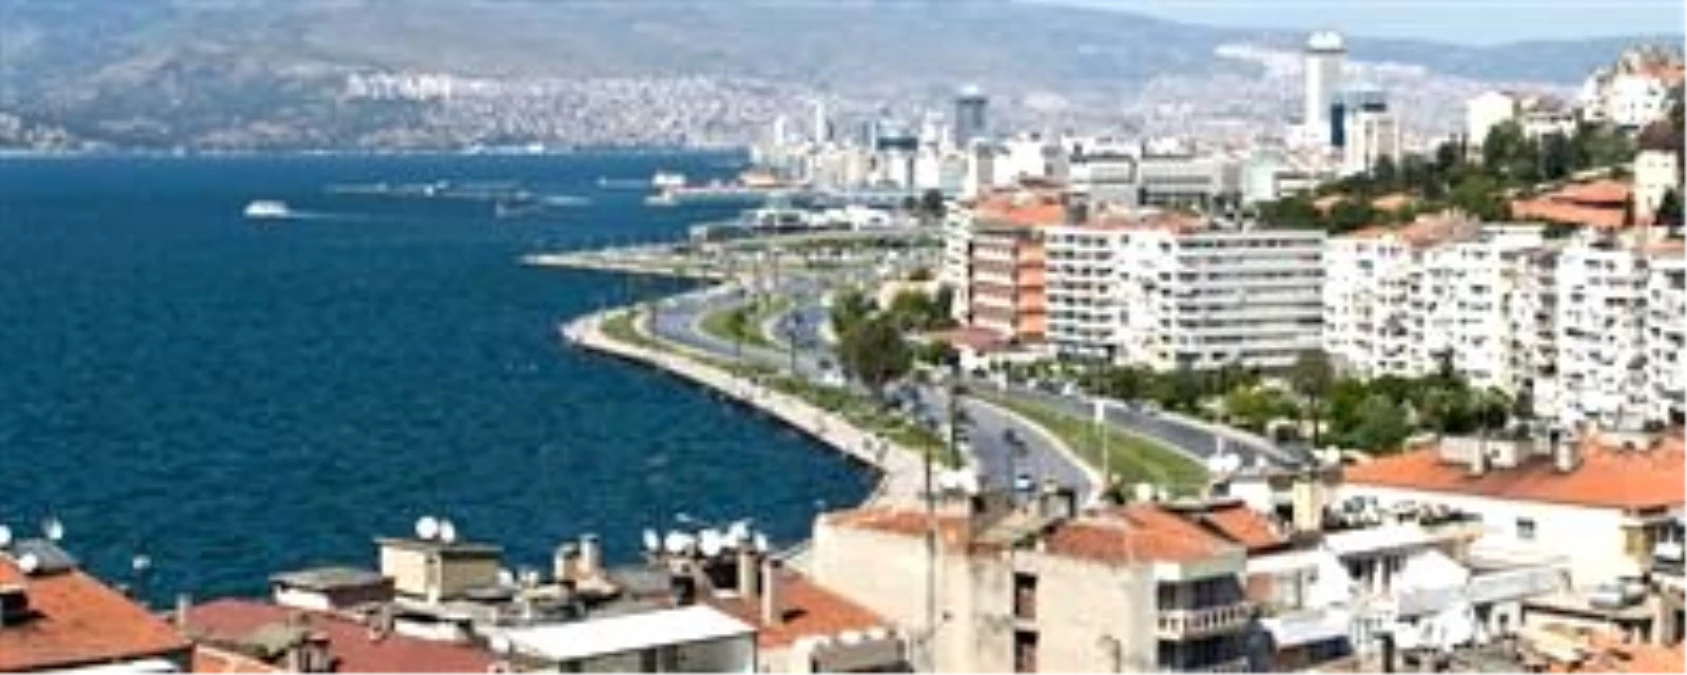 İzmir Körfezi Yeniden Tasarlanıyor